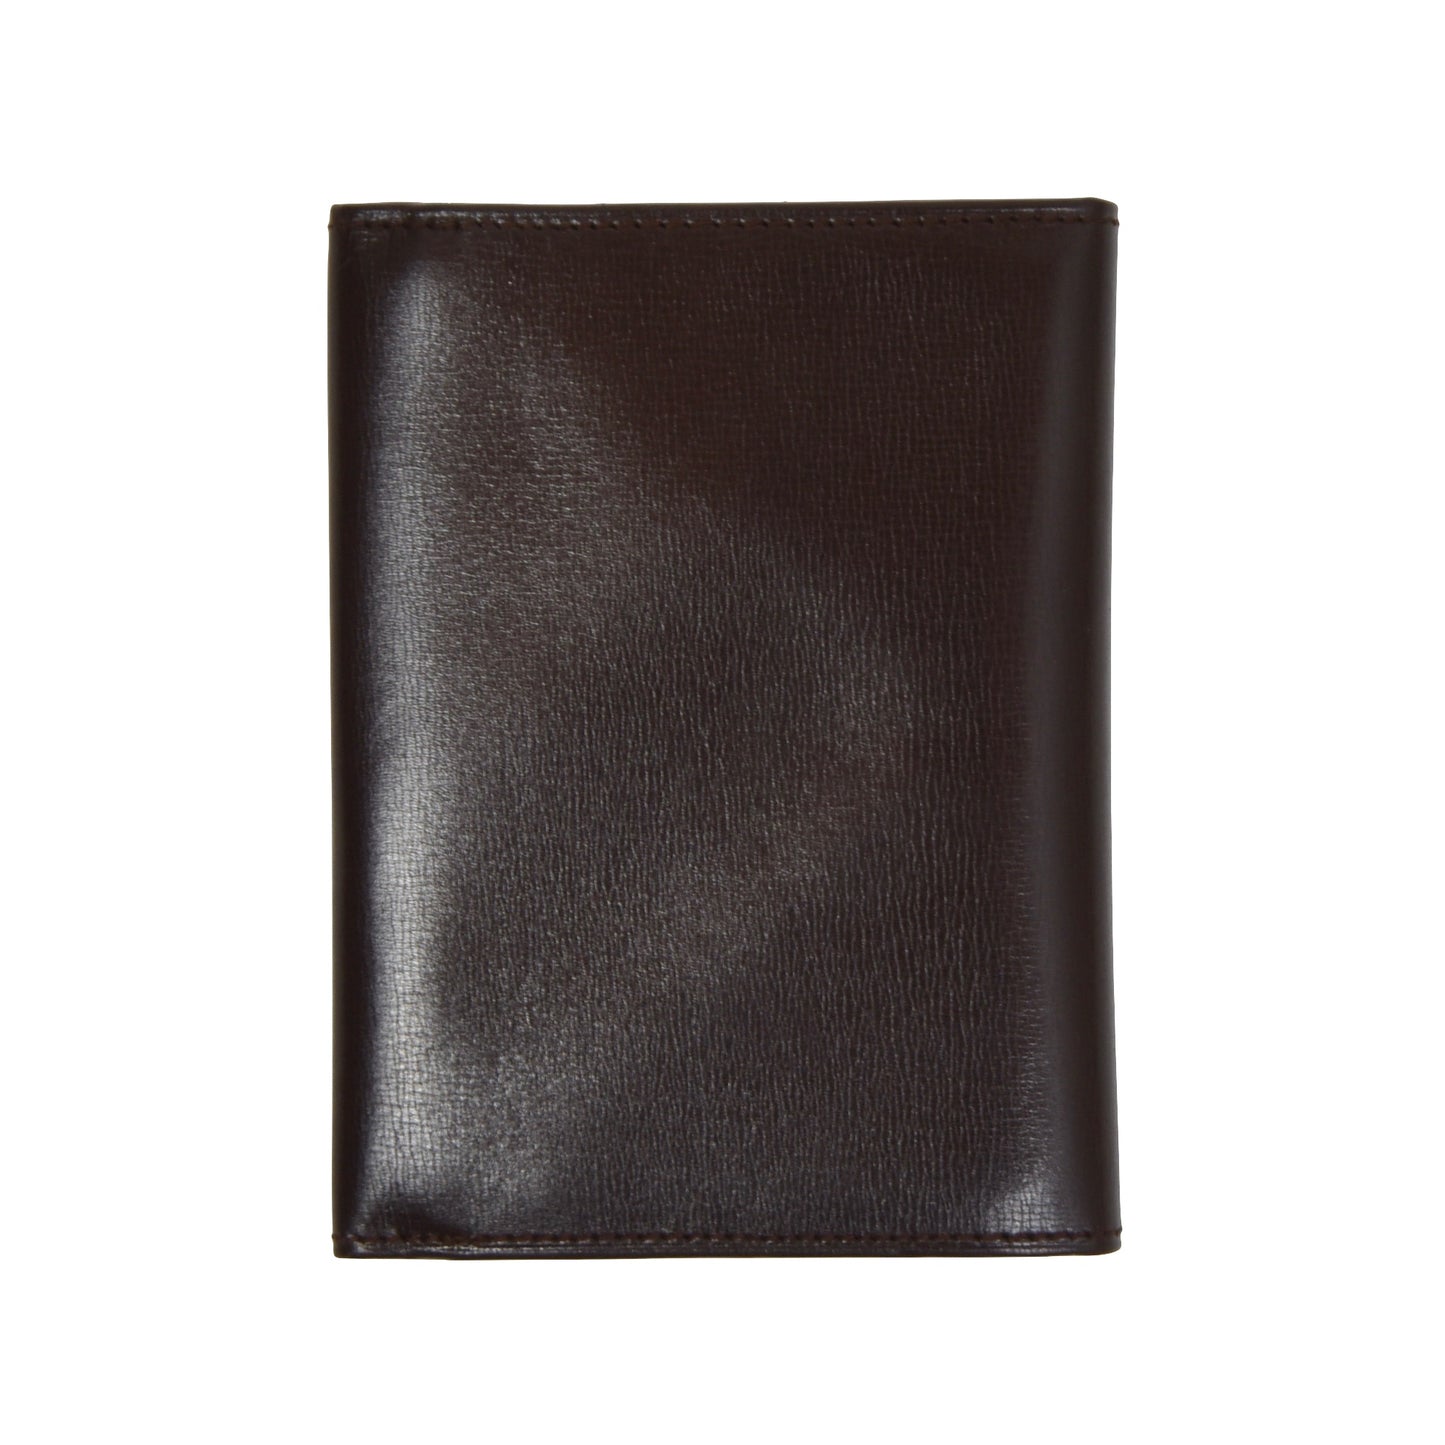 Hans Knoll Wien Leather Wallet - Brown